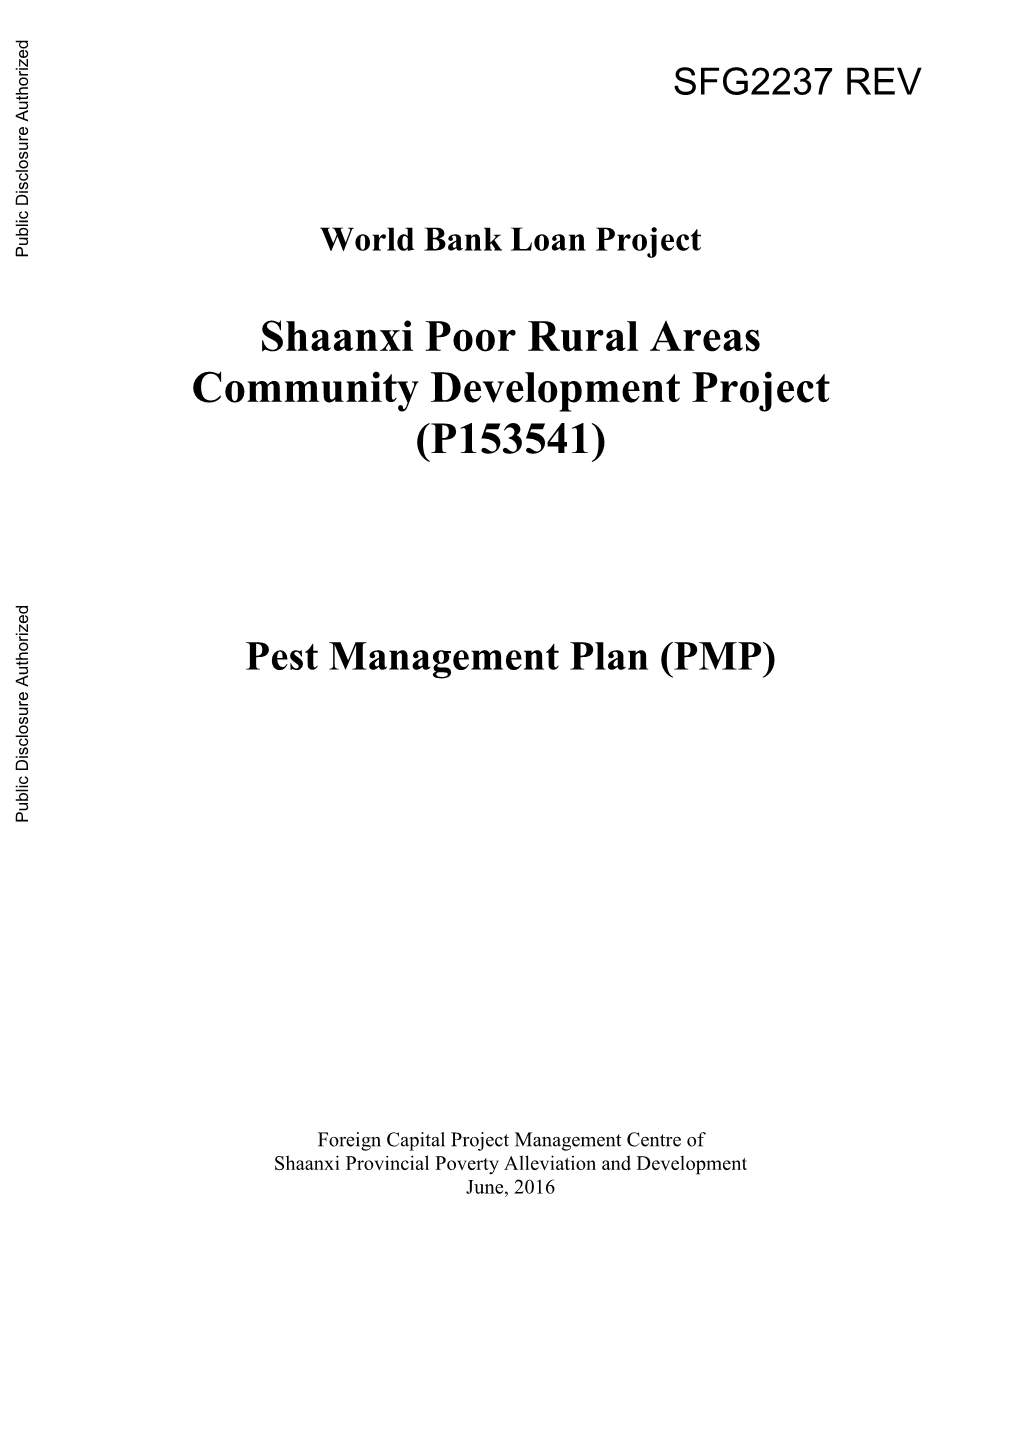 Pest Management Plan (PMP)